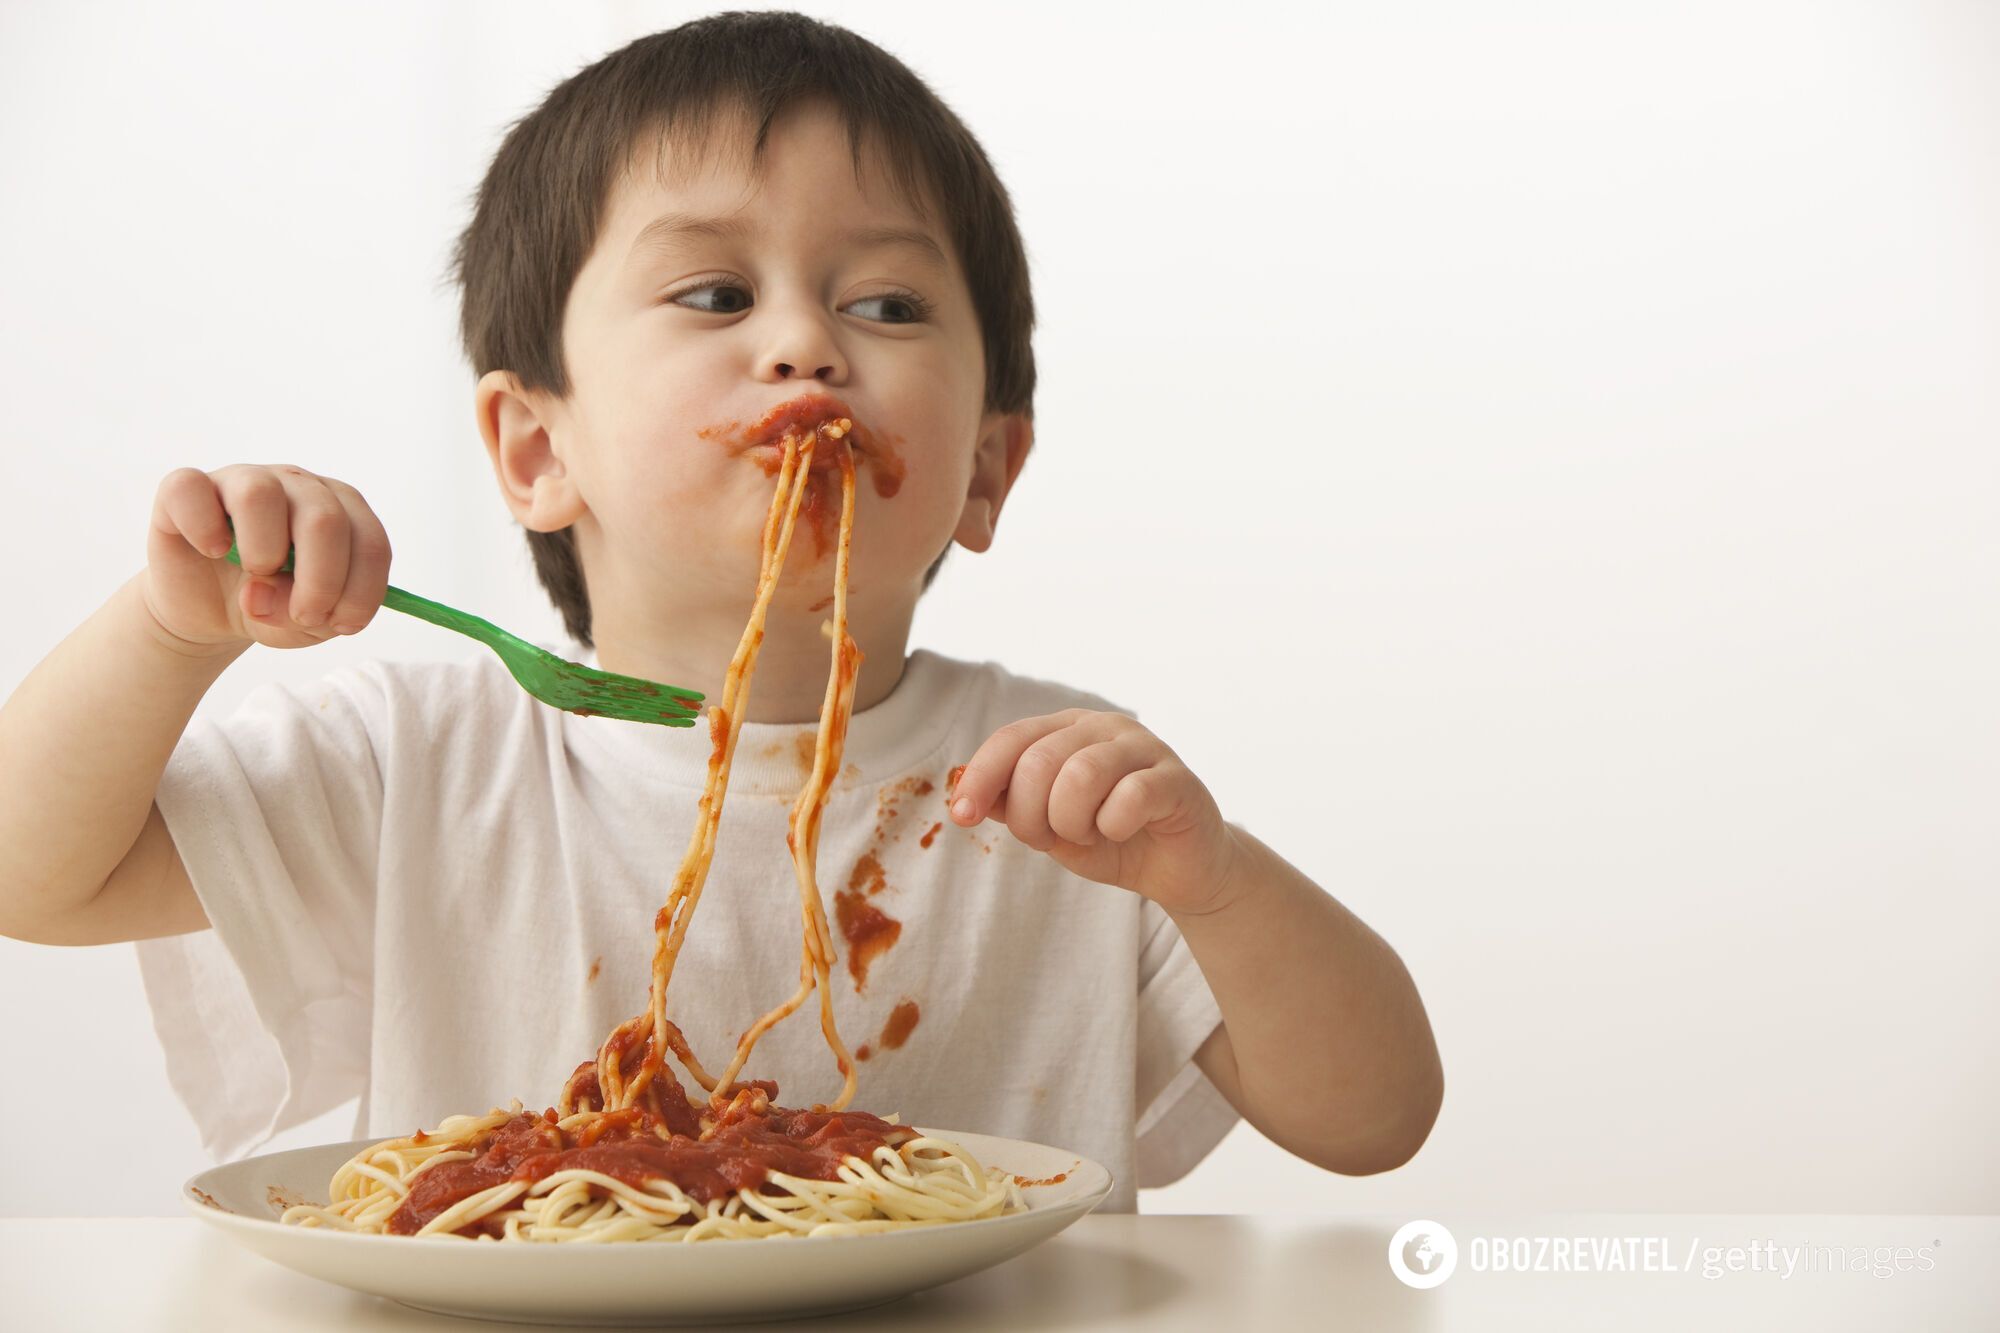 Spaghetti gotuje się bardzo szybko